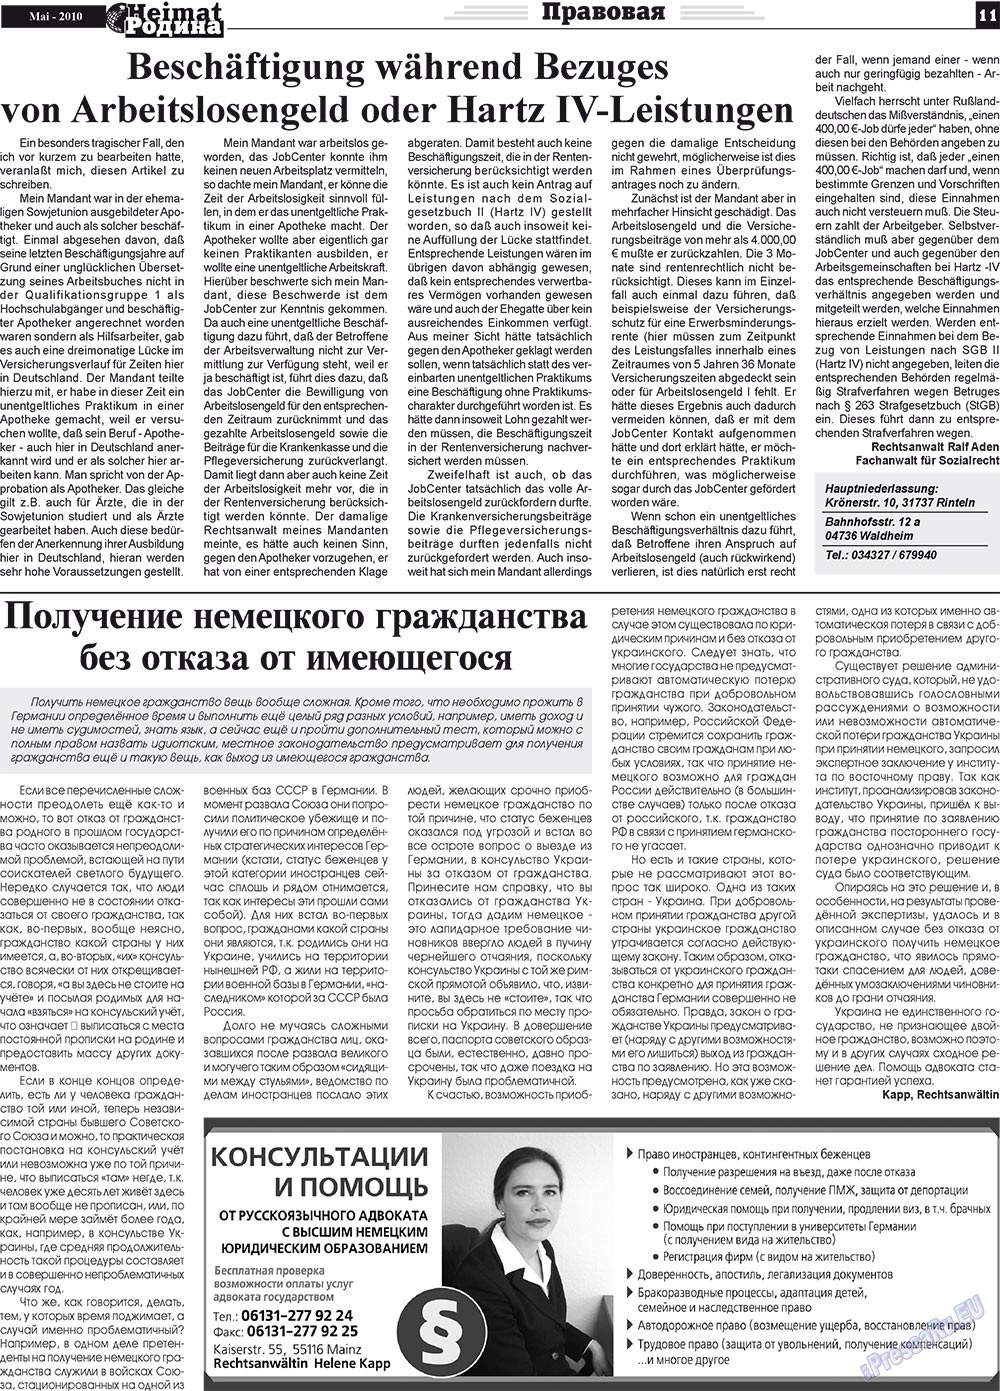 Heimat-Родина (газета). 2010 год, номер 5, стр. 11